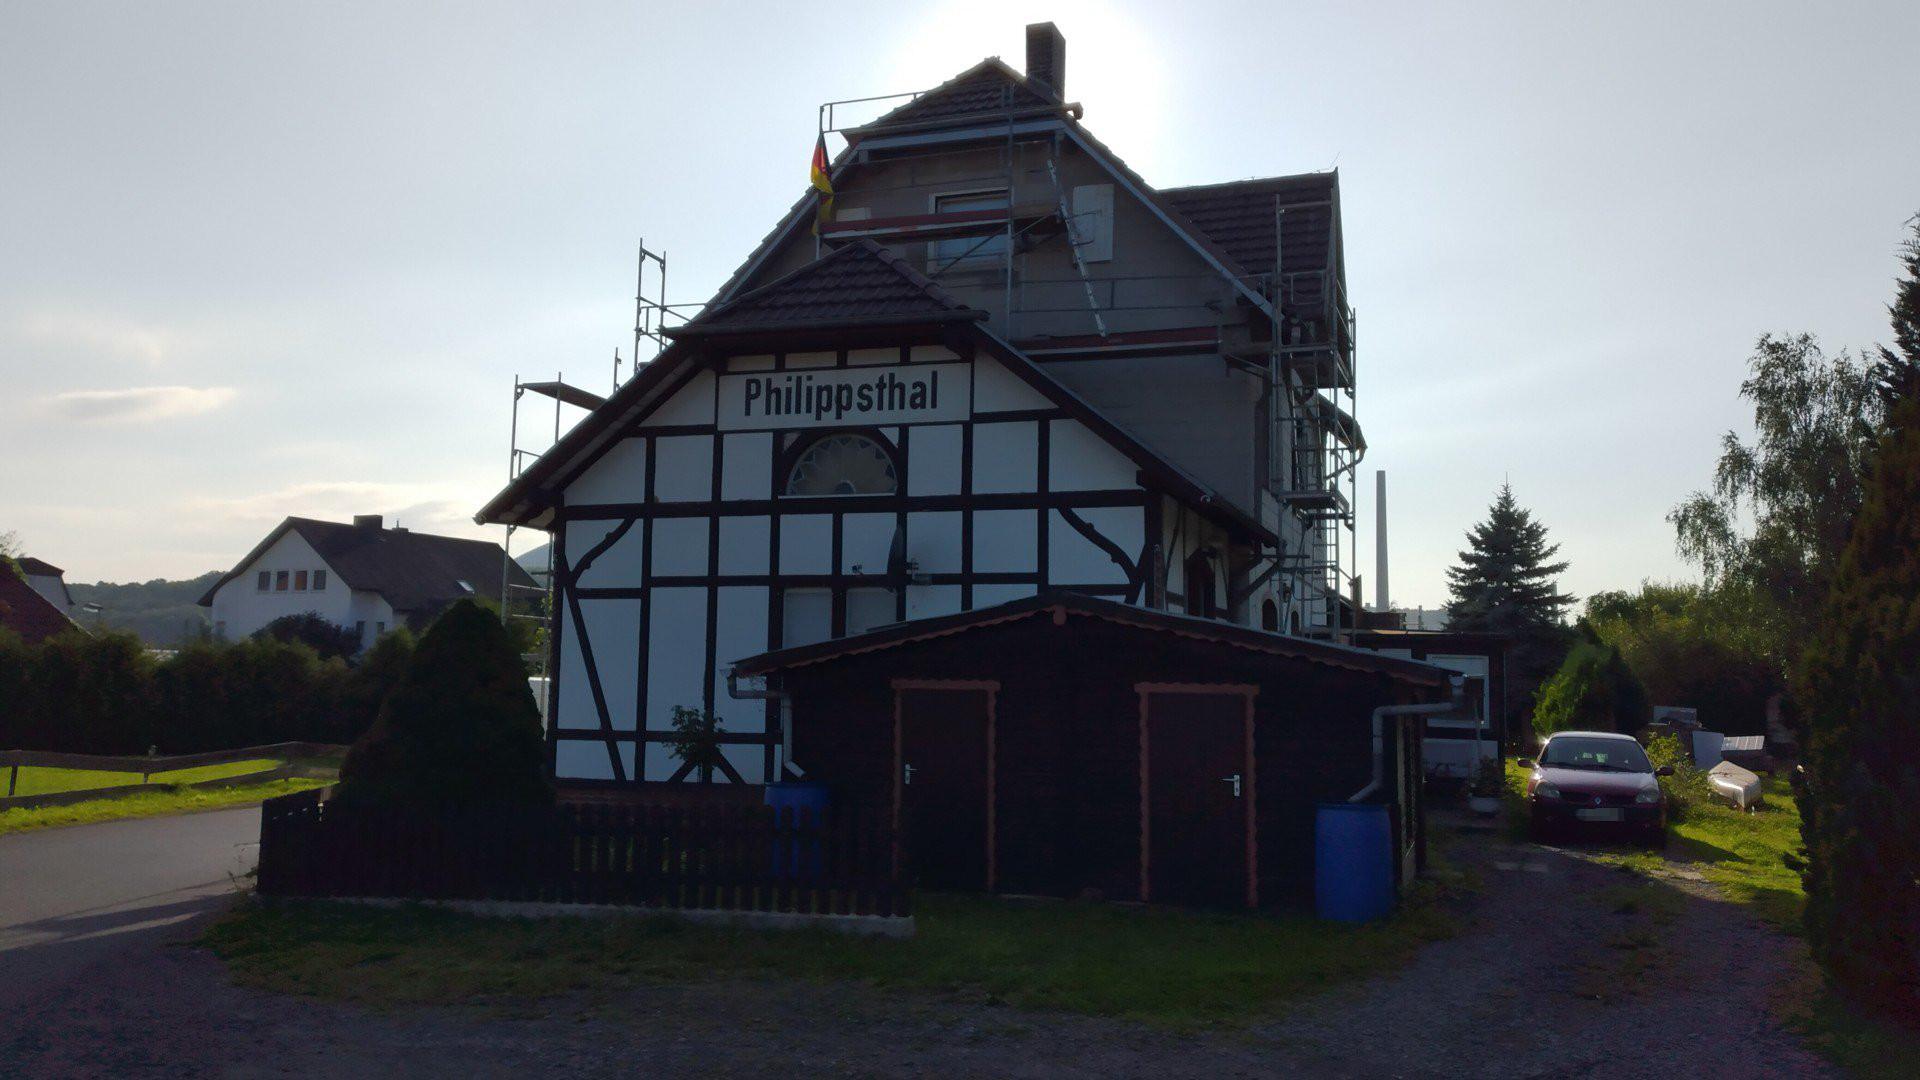 Philippsthal